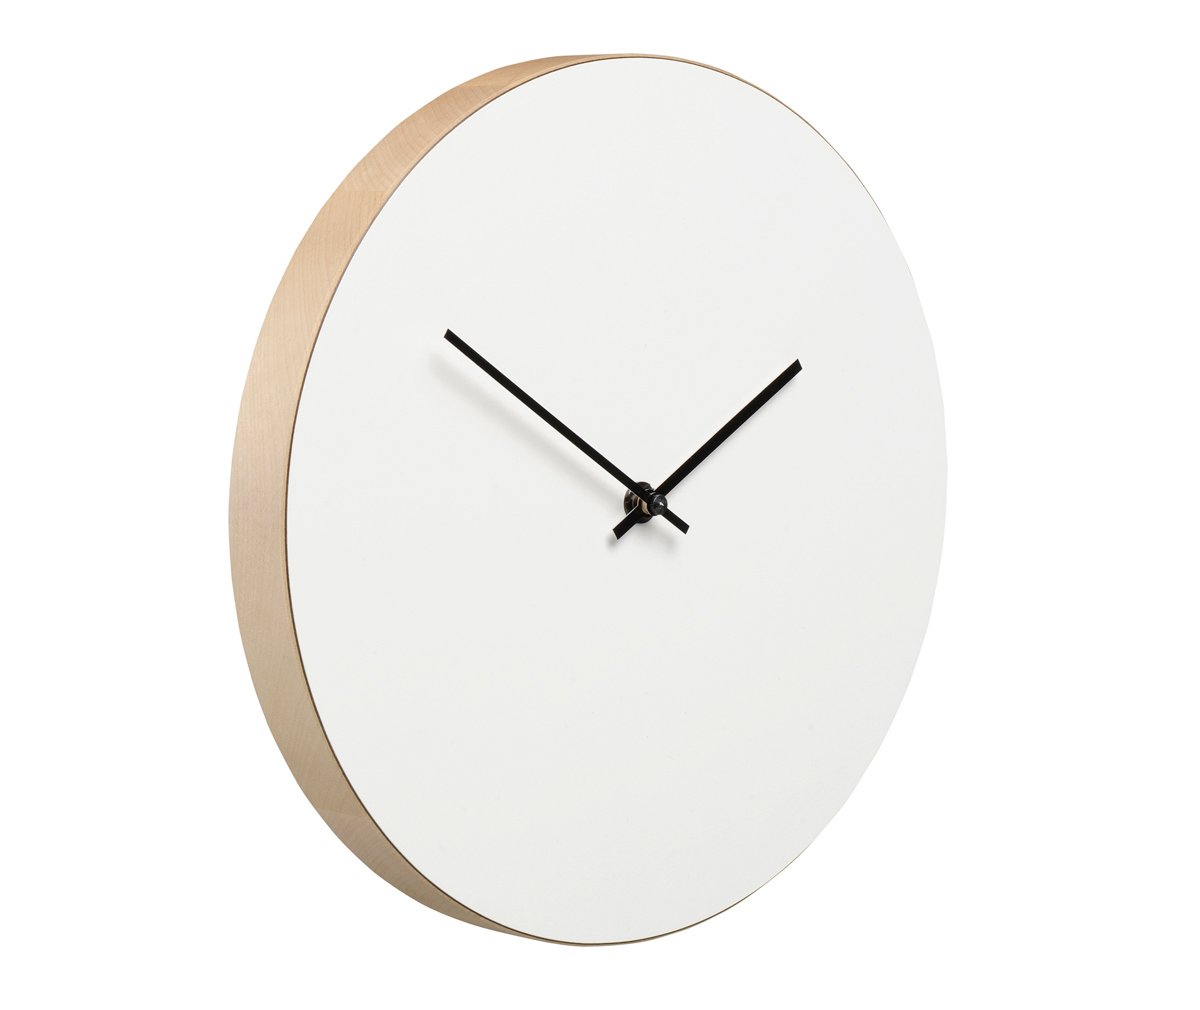 Muoto2 Kiekko Wall Clock White/Birch, ⌀ 27 cm